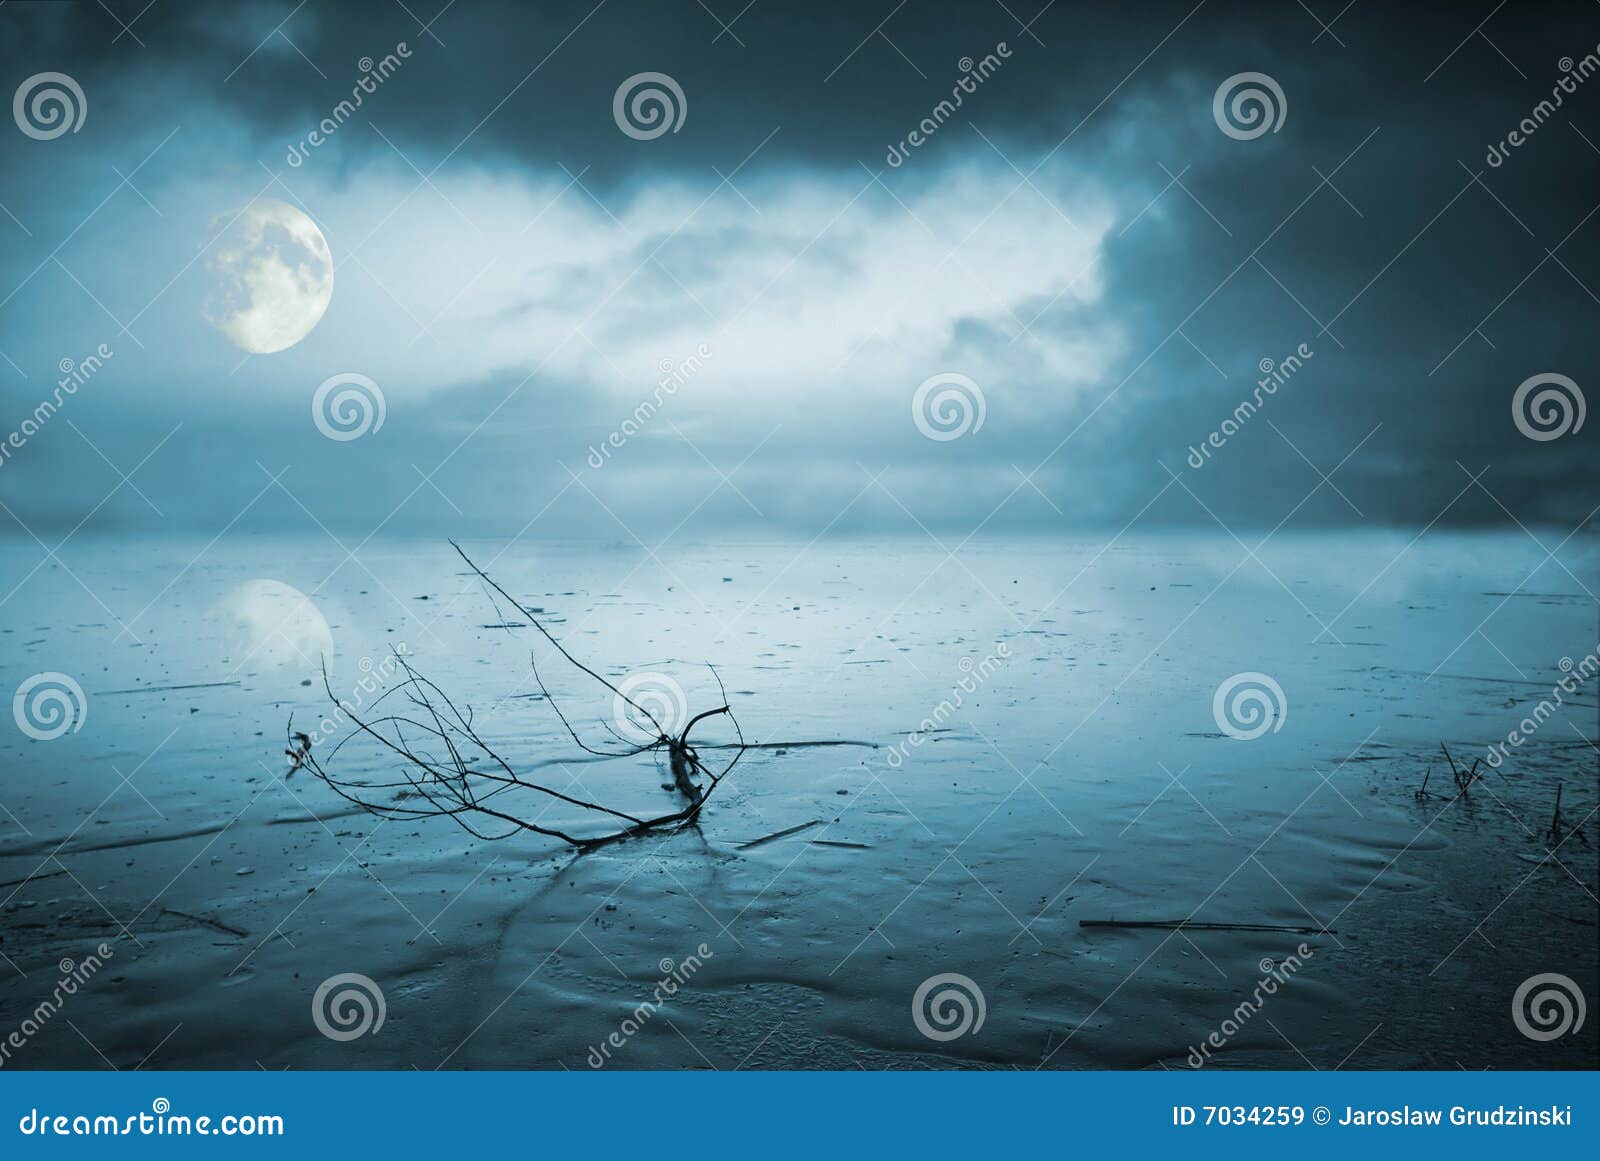 frozen lake in moonlight